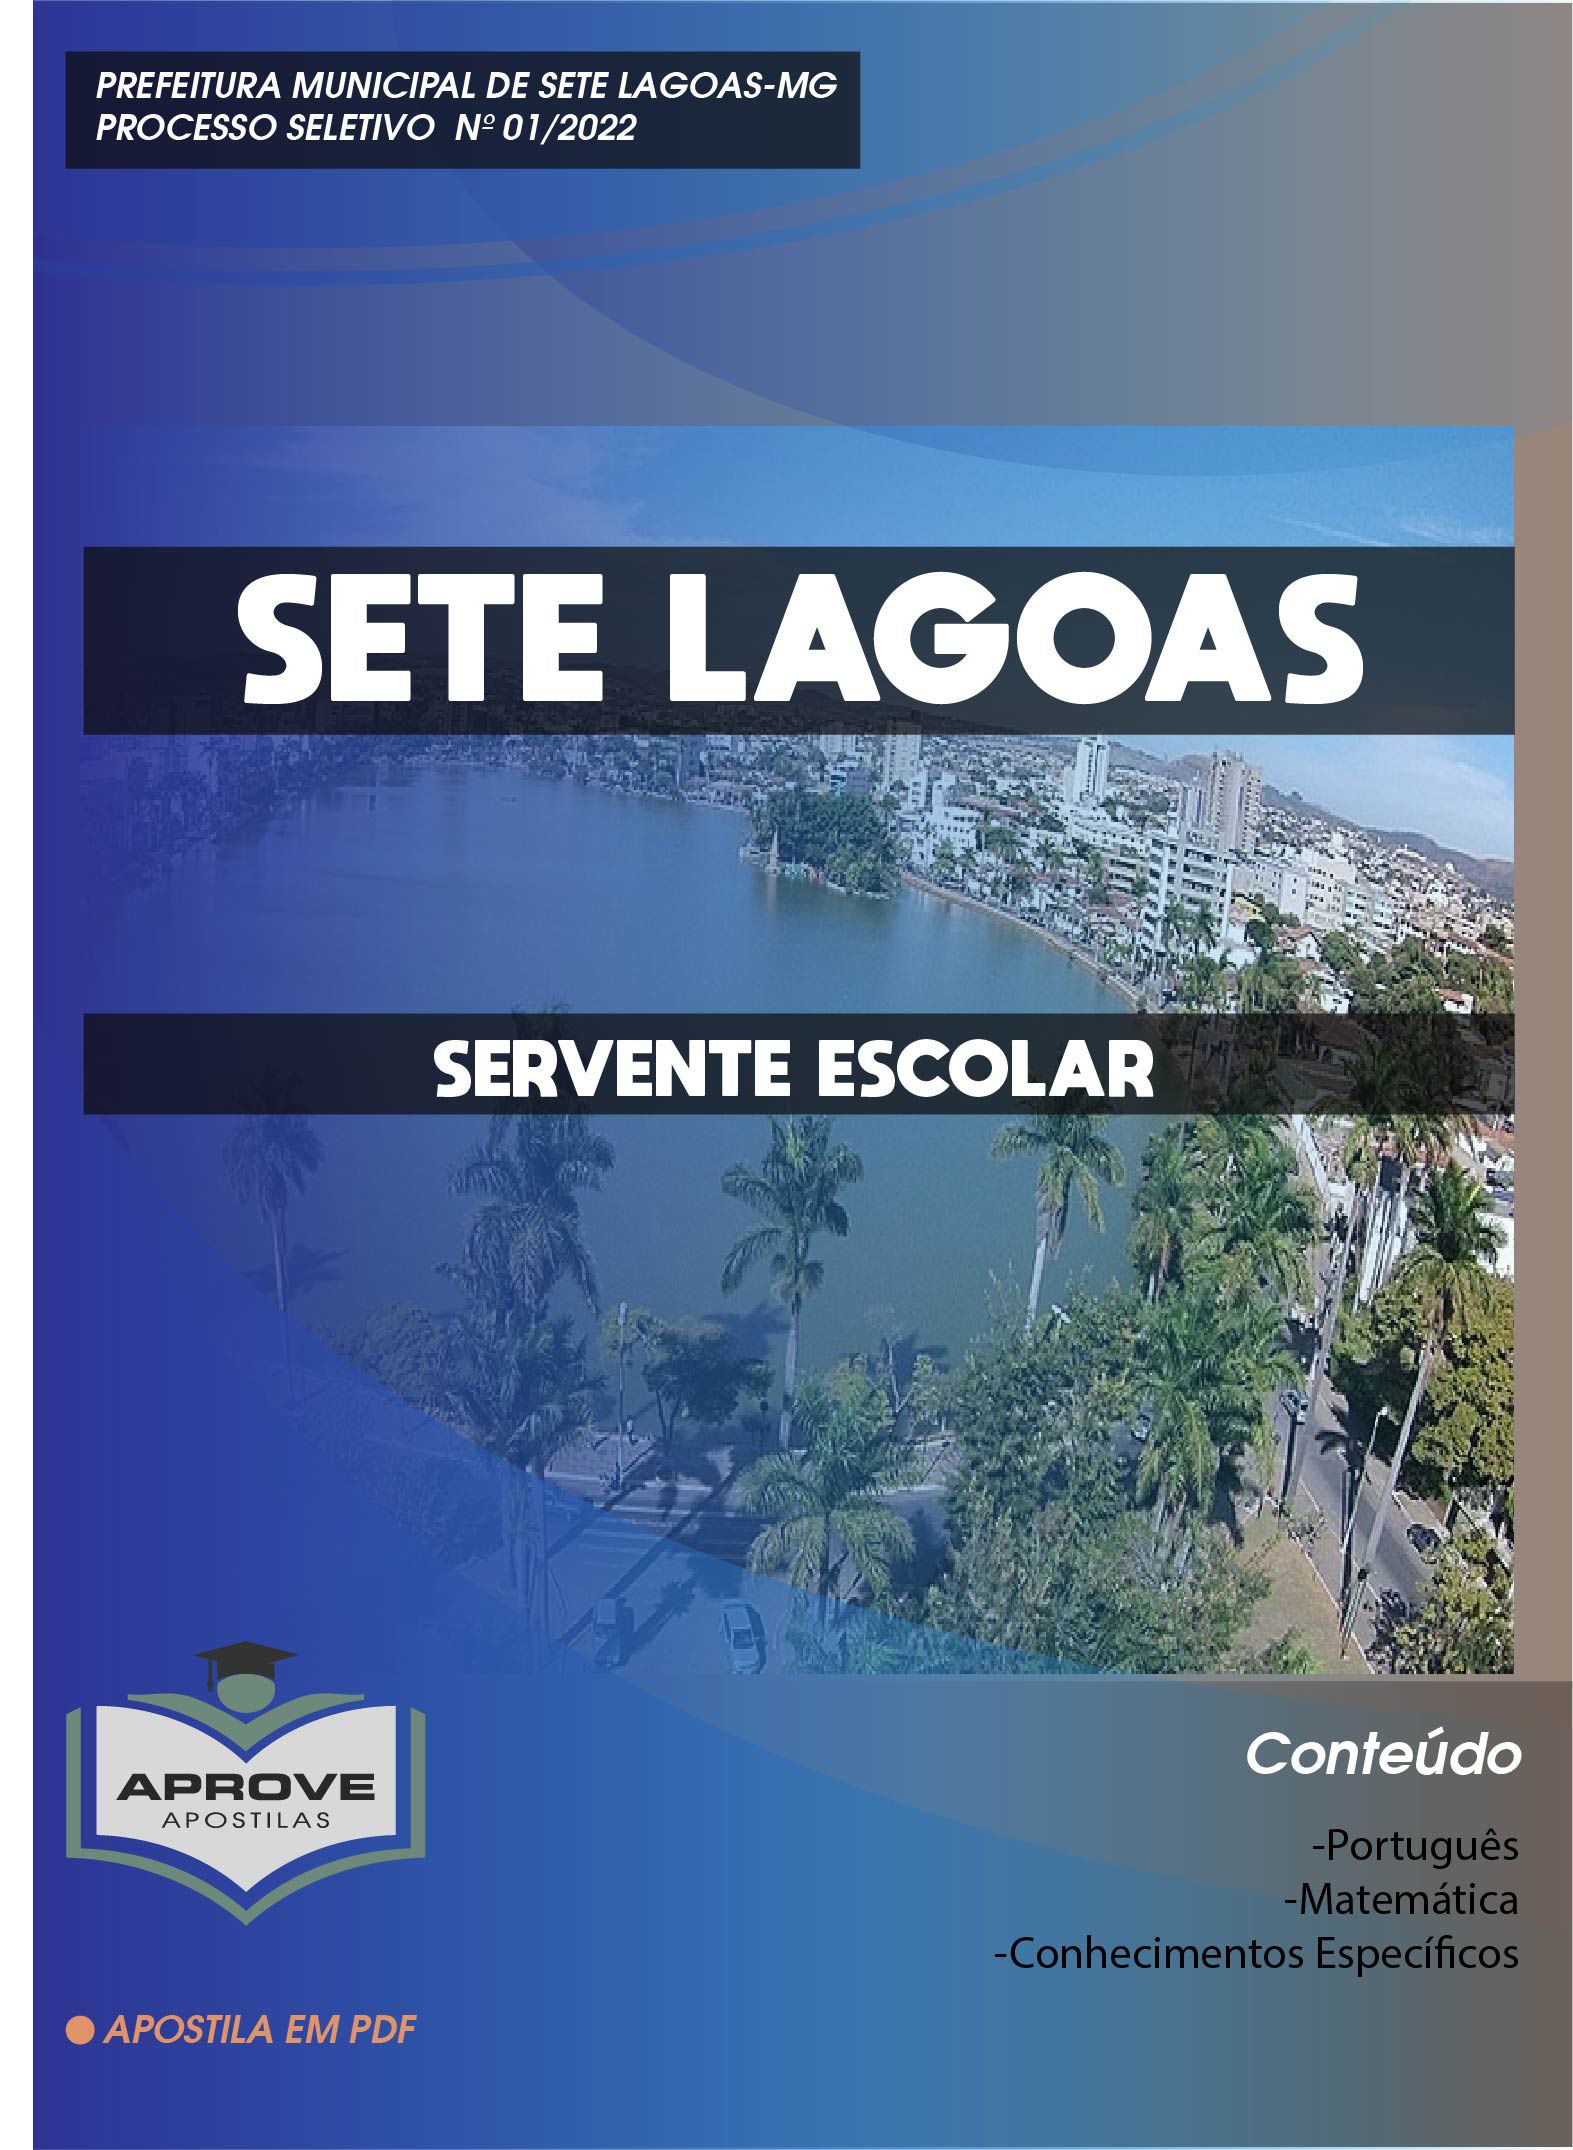 Apostila SME Sete Lagoas - MG em PDF - Assistente de Turno